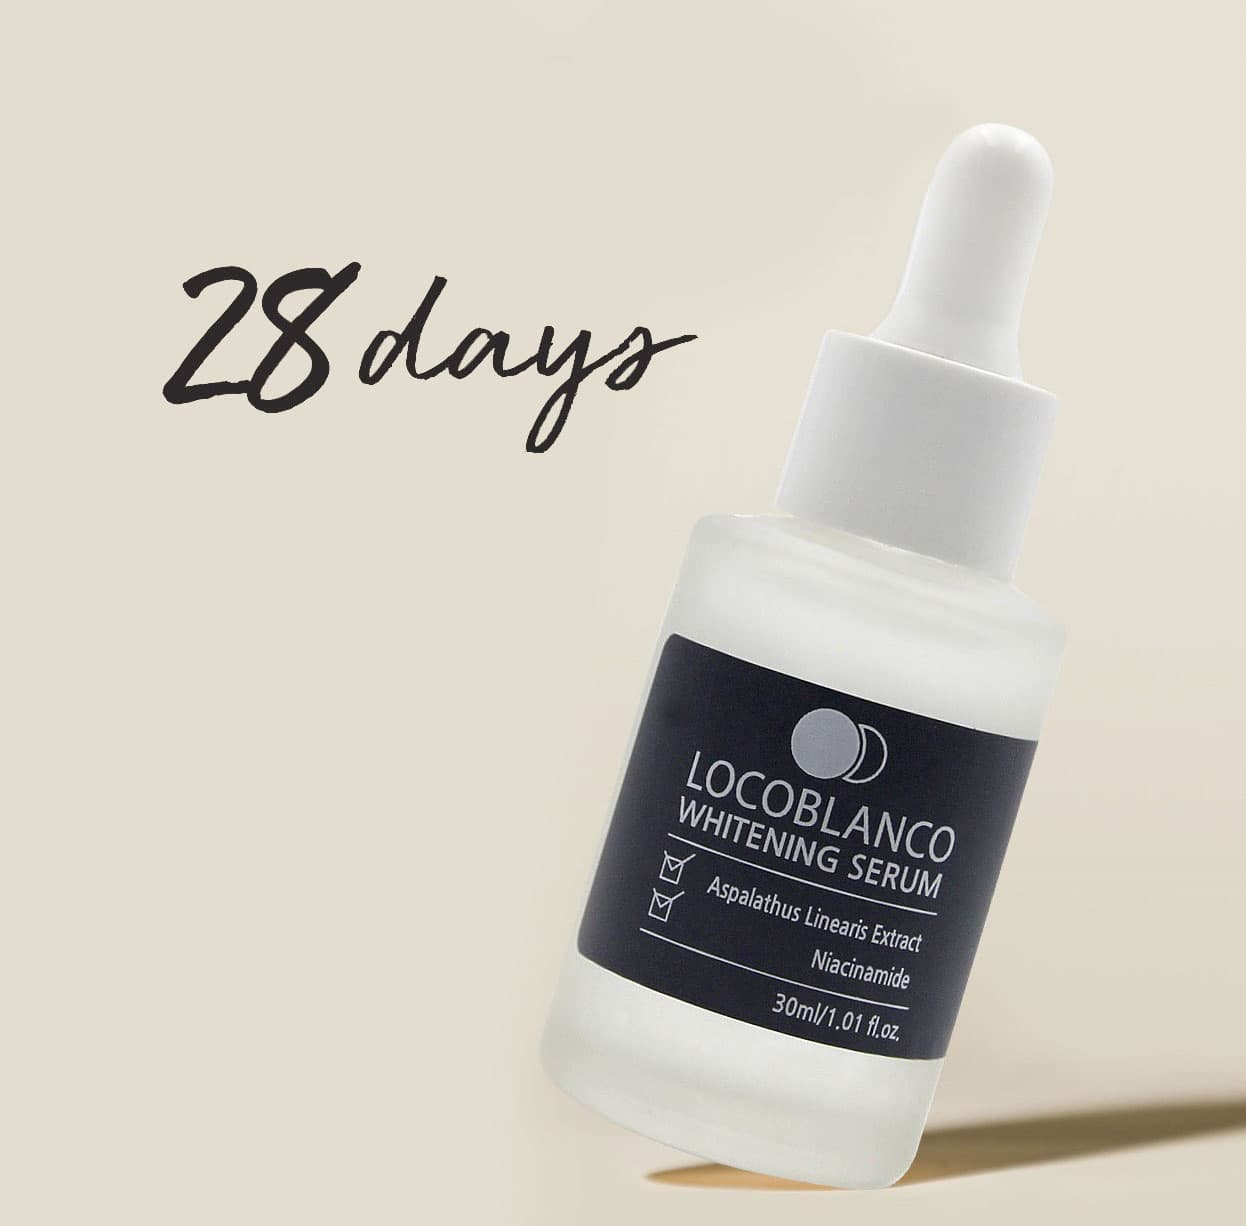 Locoblanco Whitening Serum Korea cosmetics skin lightening